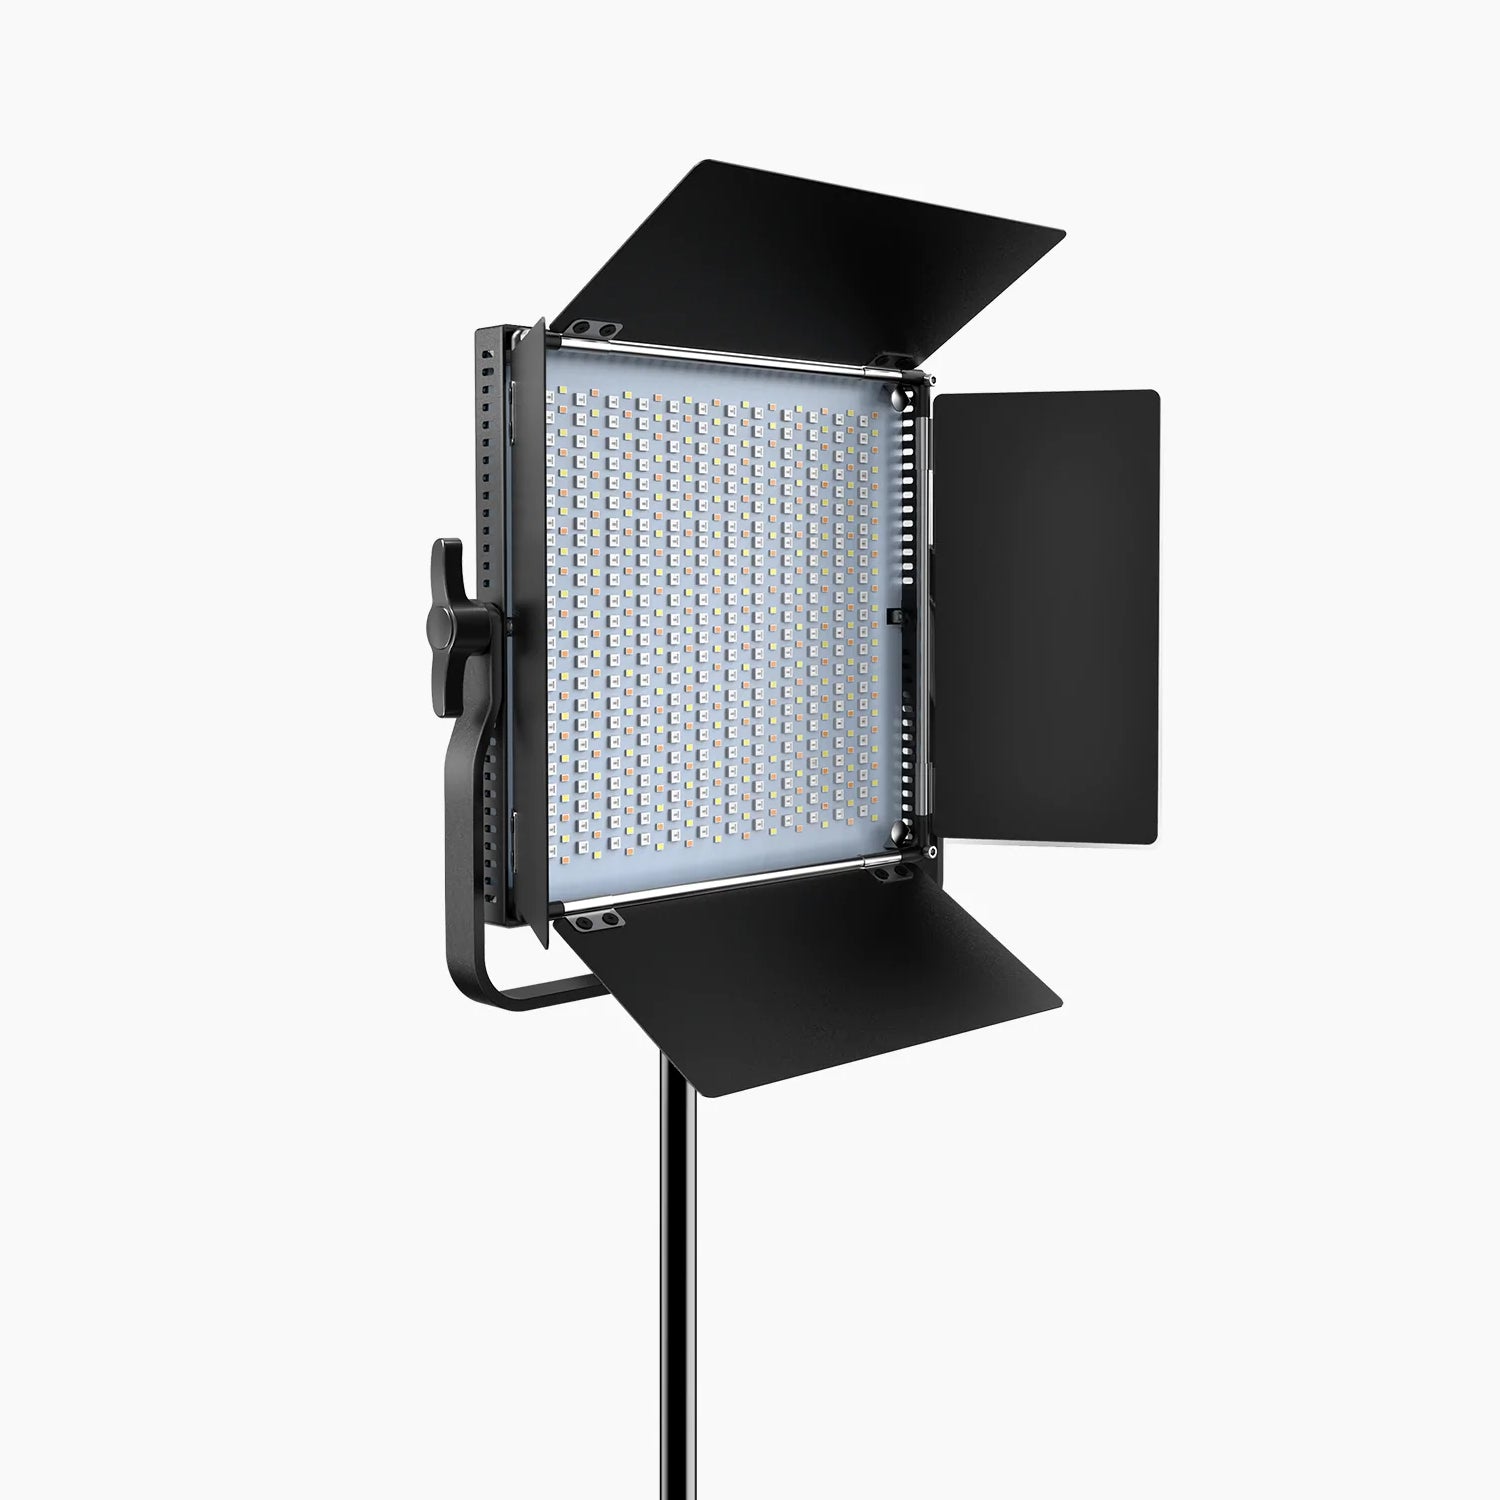 PIXEL K80 RGB LED Video Light